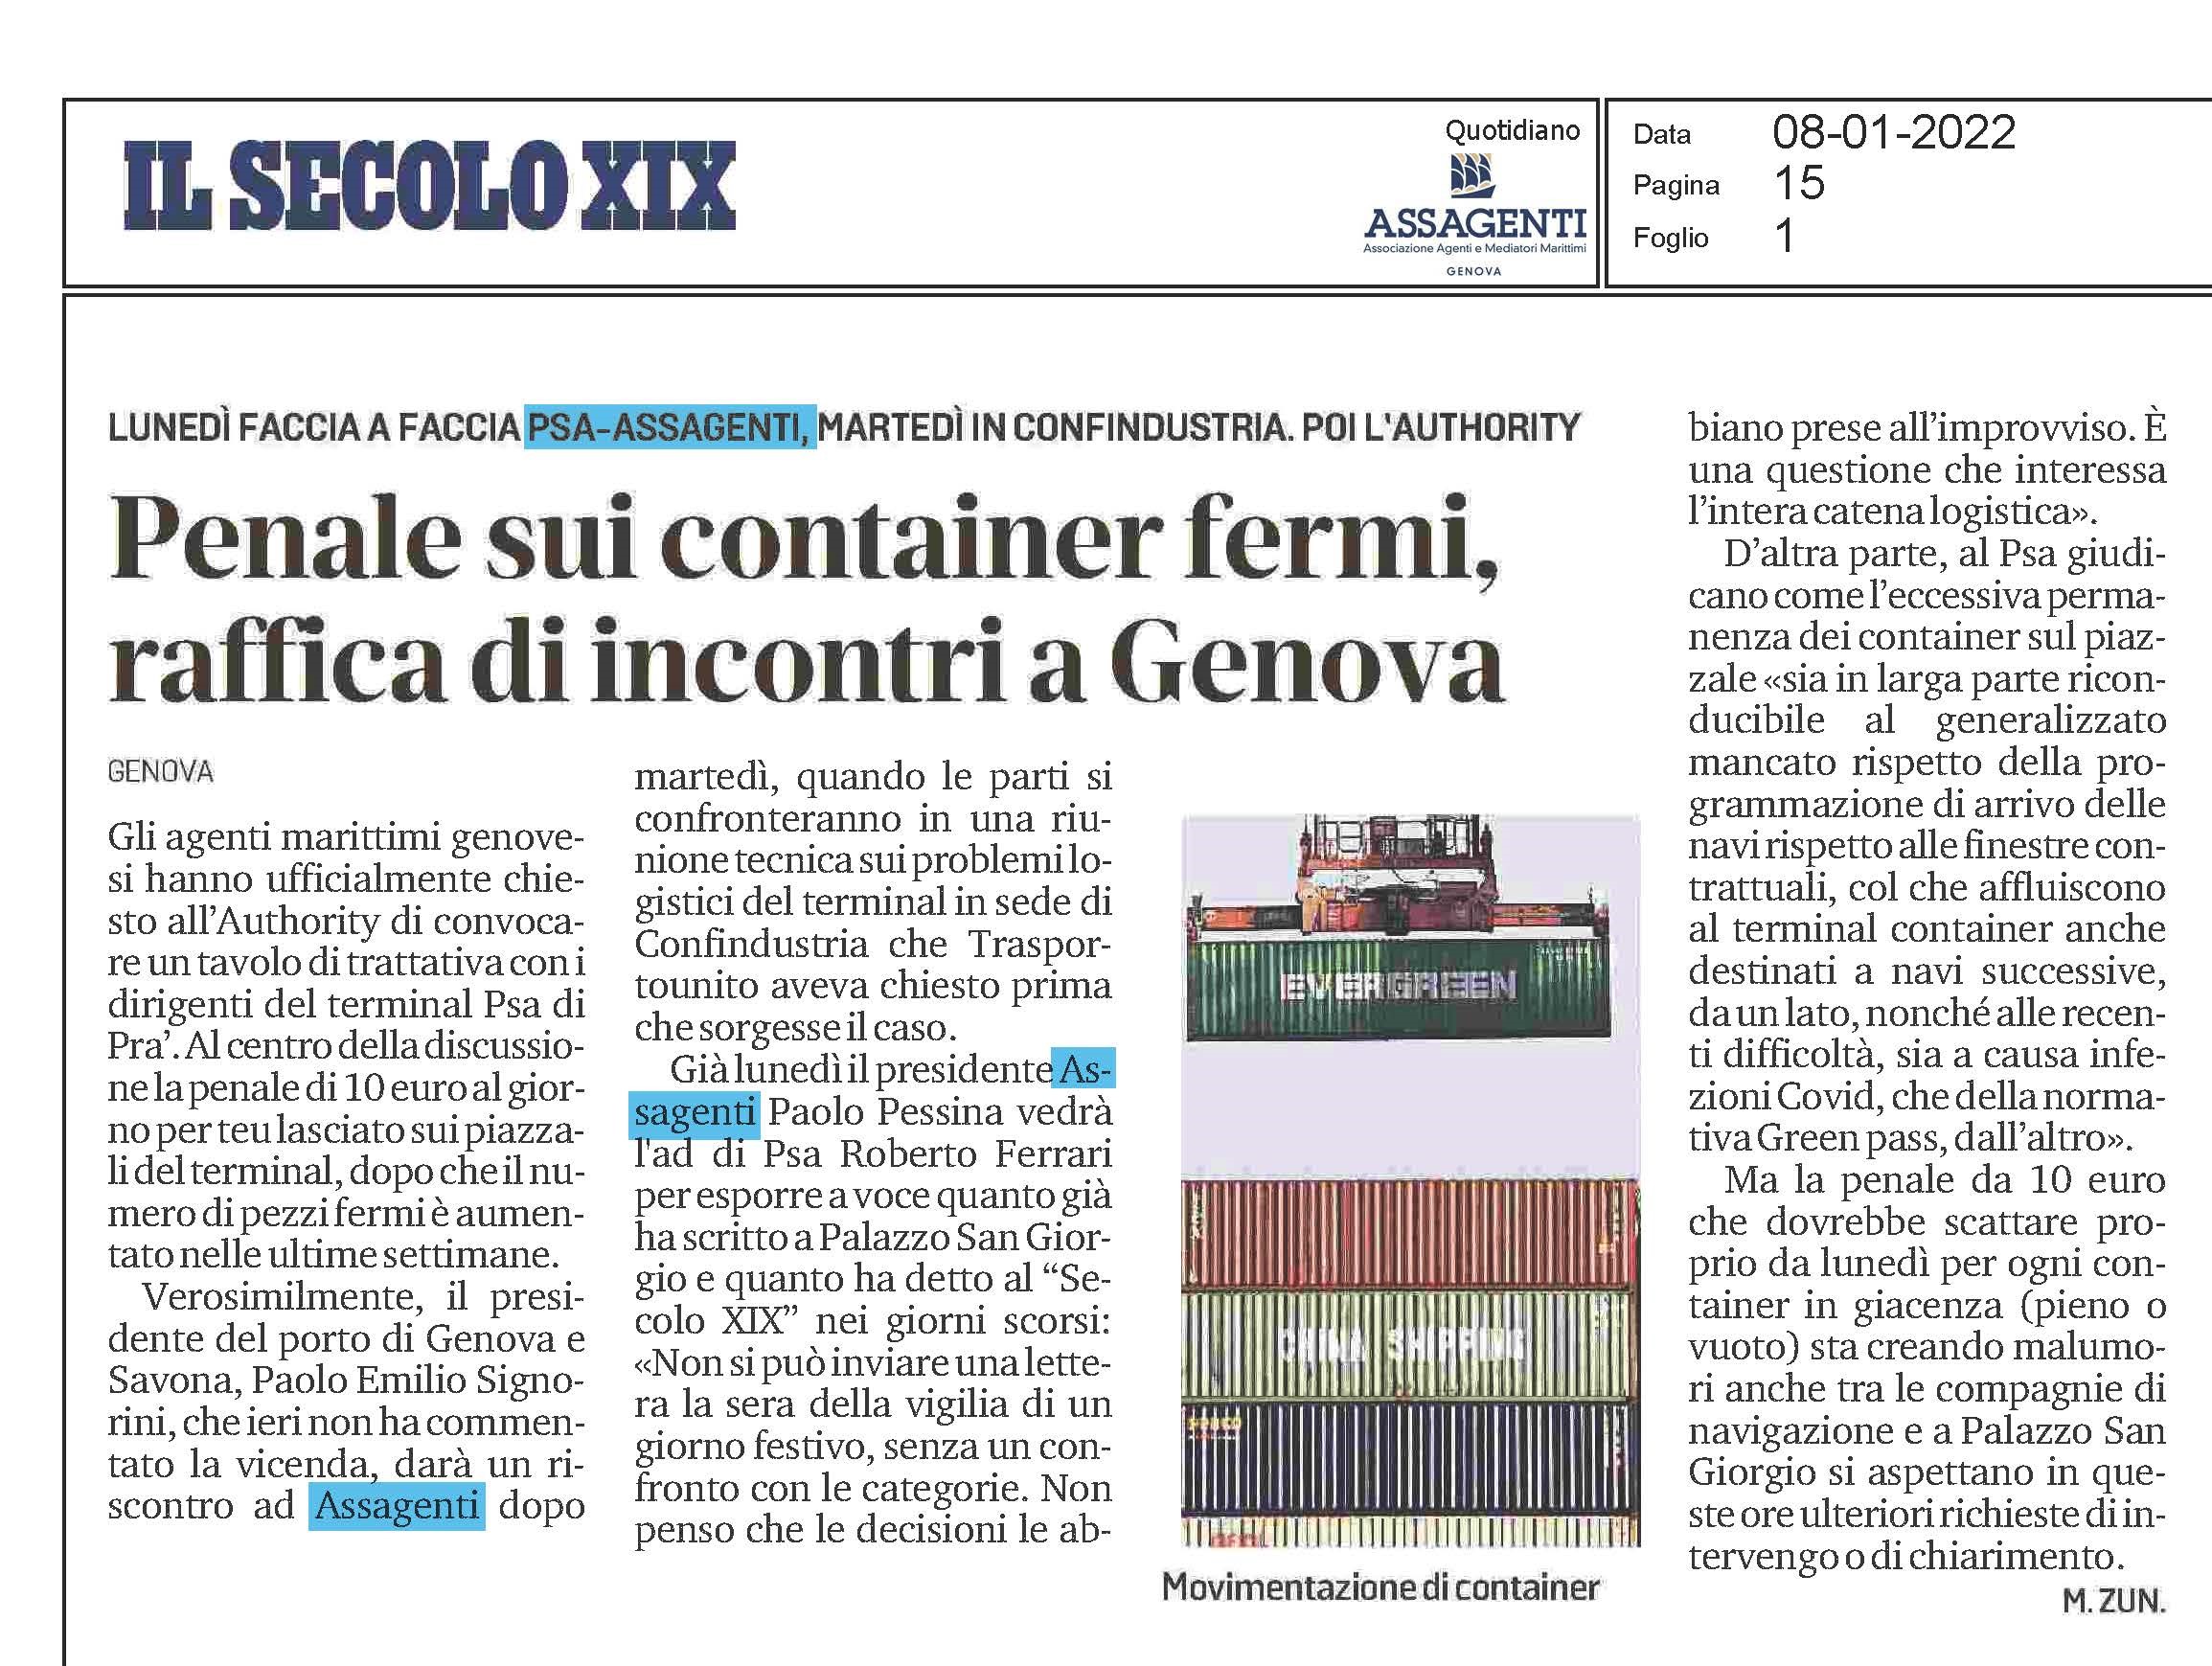 Penale sui container fermi, raffica di incontri a Genova